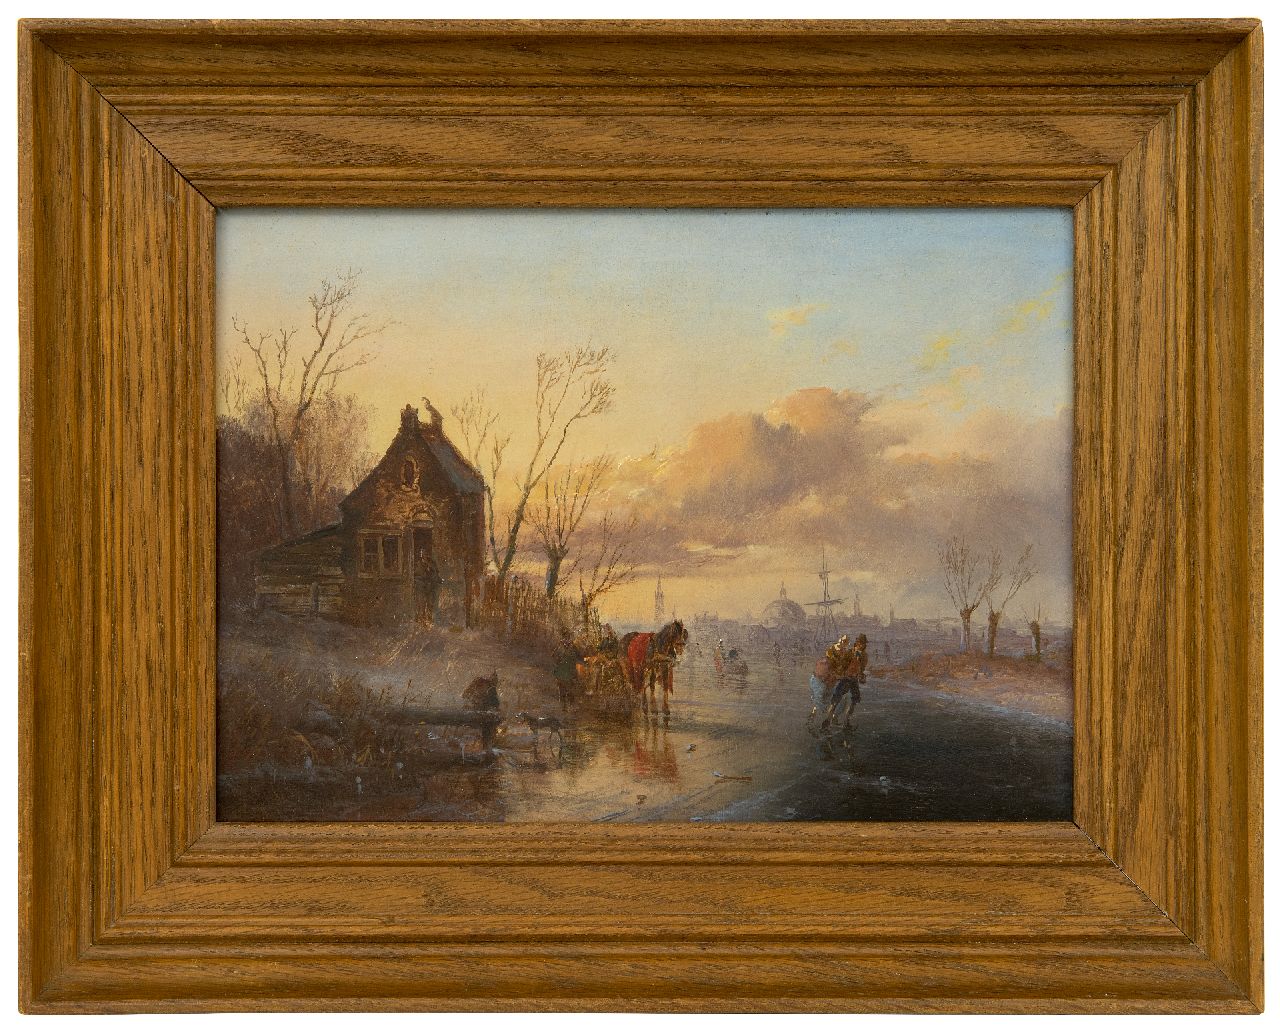 Morel II J.E.  | Jan Evert Morel II | Schilderijen te koop aangeboden | IJsgezicht met schaatsers, een grote stad op de achtergrond, olieverf op paneel 20,2 x 28,5 cm, gesigneerd linksonder